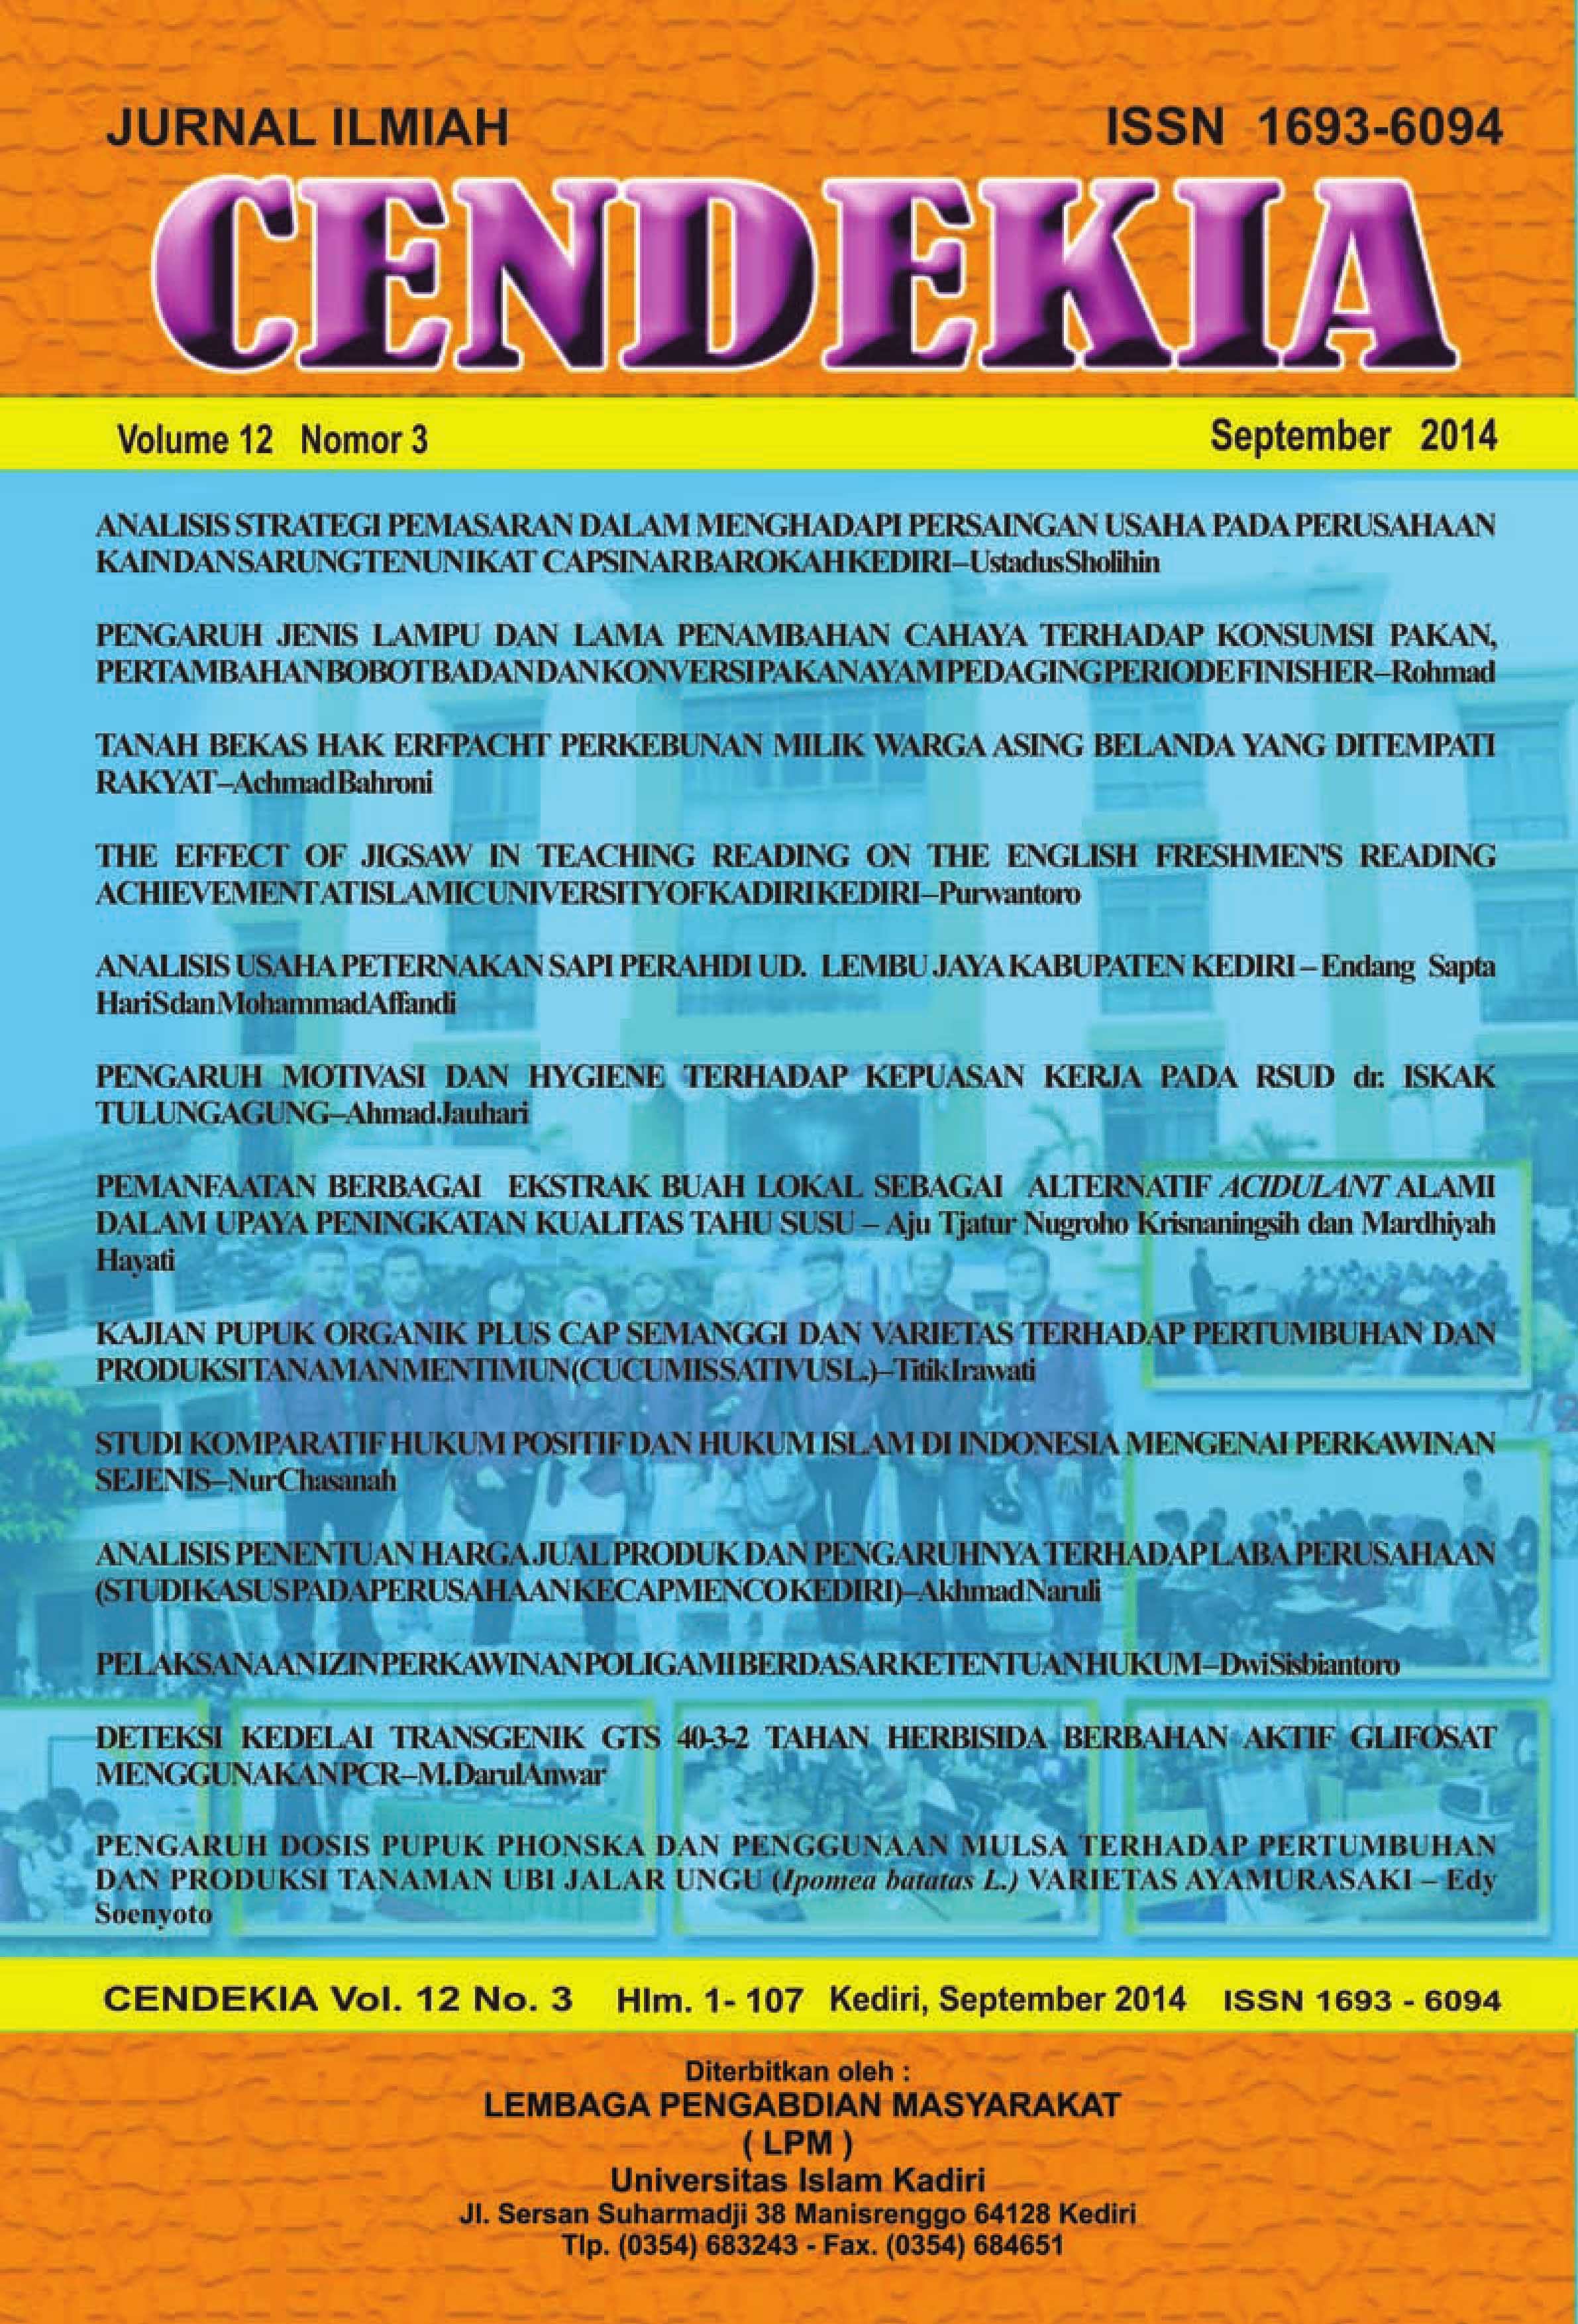 Cendekia Volume 12 No.3 September 2014